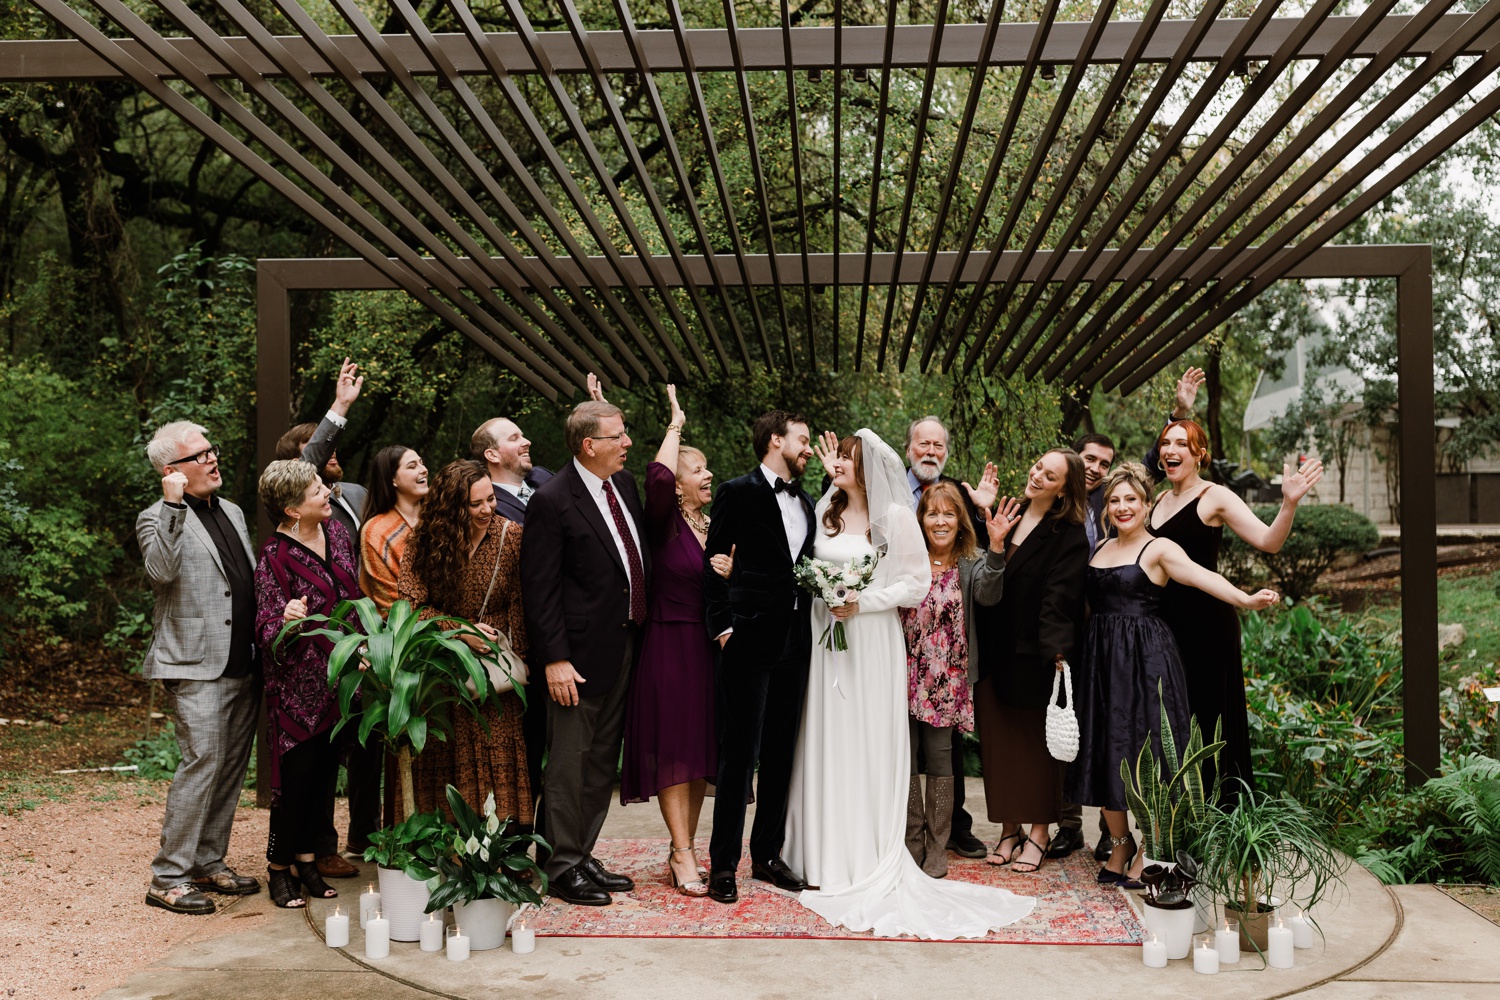 Candid wedding family portrait at UMLAUF Sculpture Garden